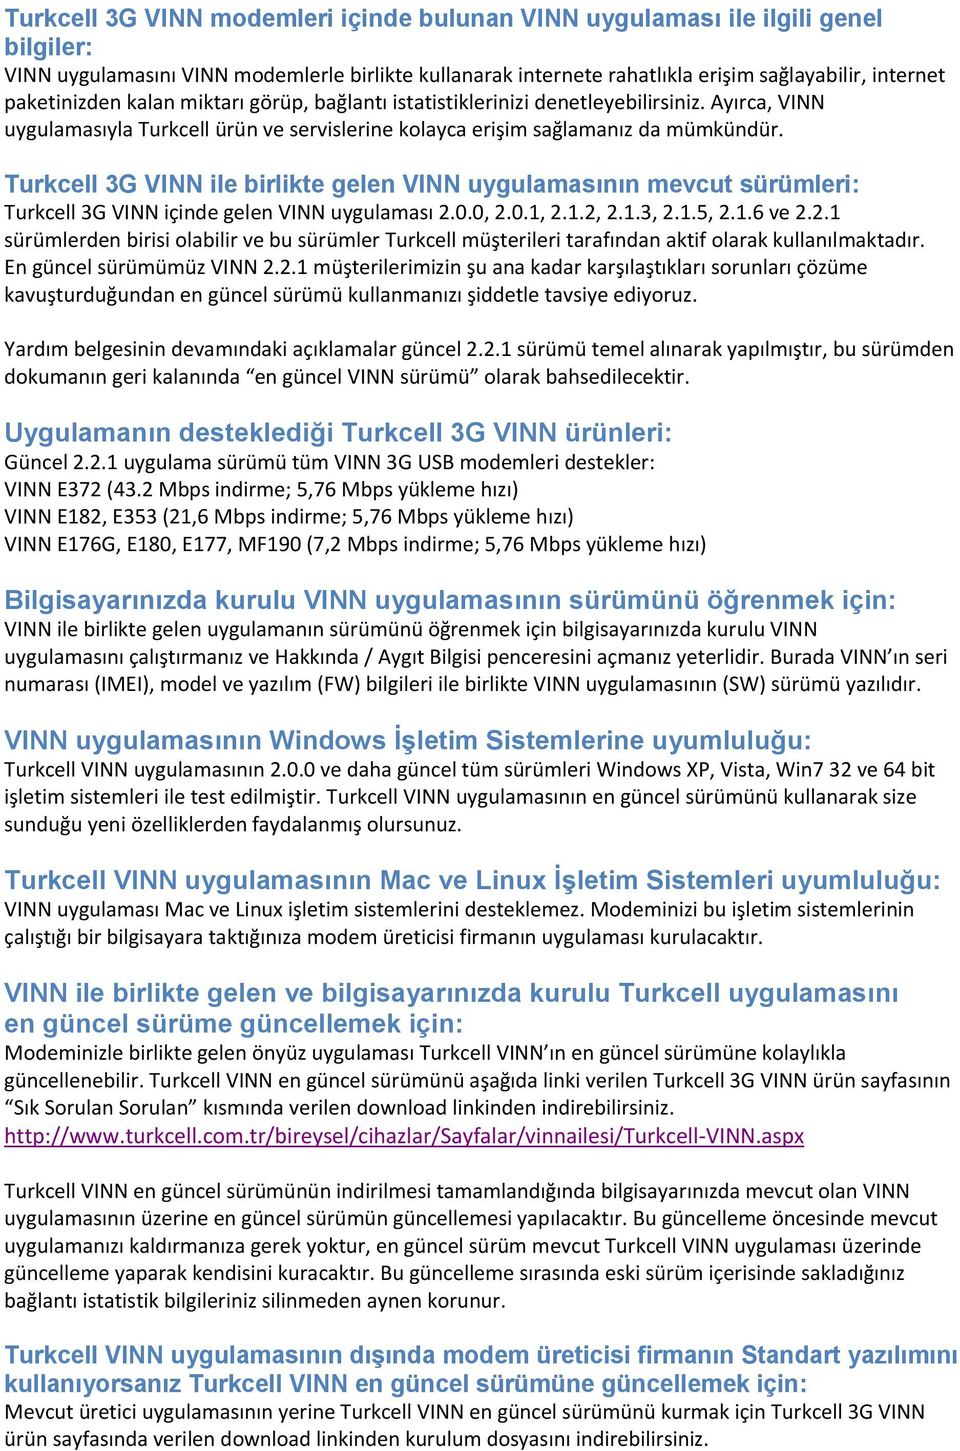 Turkcell 3G VINN ile birlikte gelen VINN uygulamasının mevcut sürümleri: Turkcell 3G VINN içinde gelen VINN uygulaması 2.